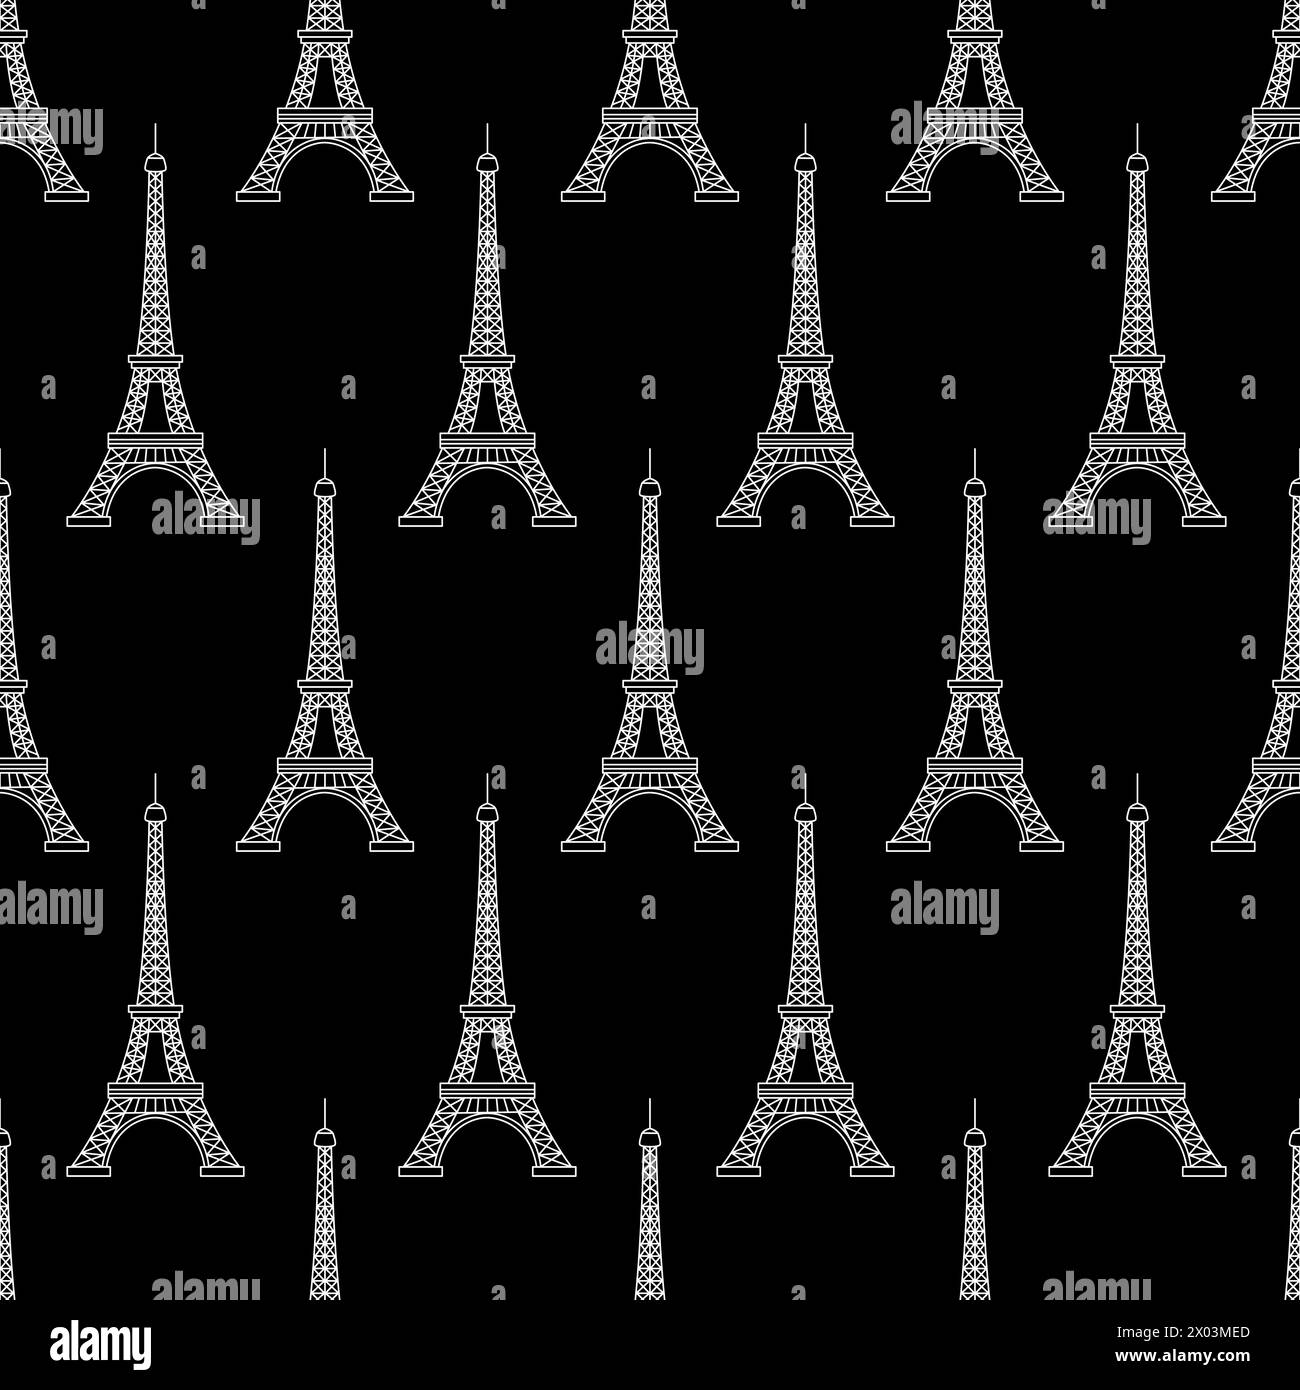 Eiffelturm Muster schwarz-weiß. Französische Nationallankmark. Nahtloser Vektor-Hintergrund. Handgezeichnetes französisches Symbol Stock Vektor